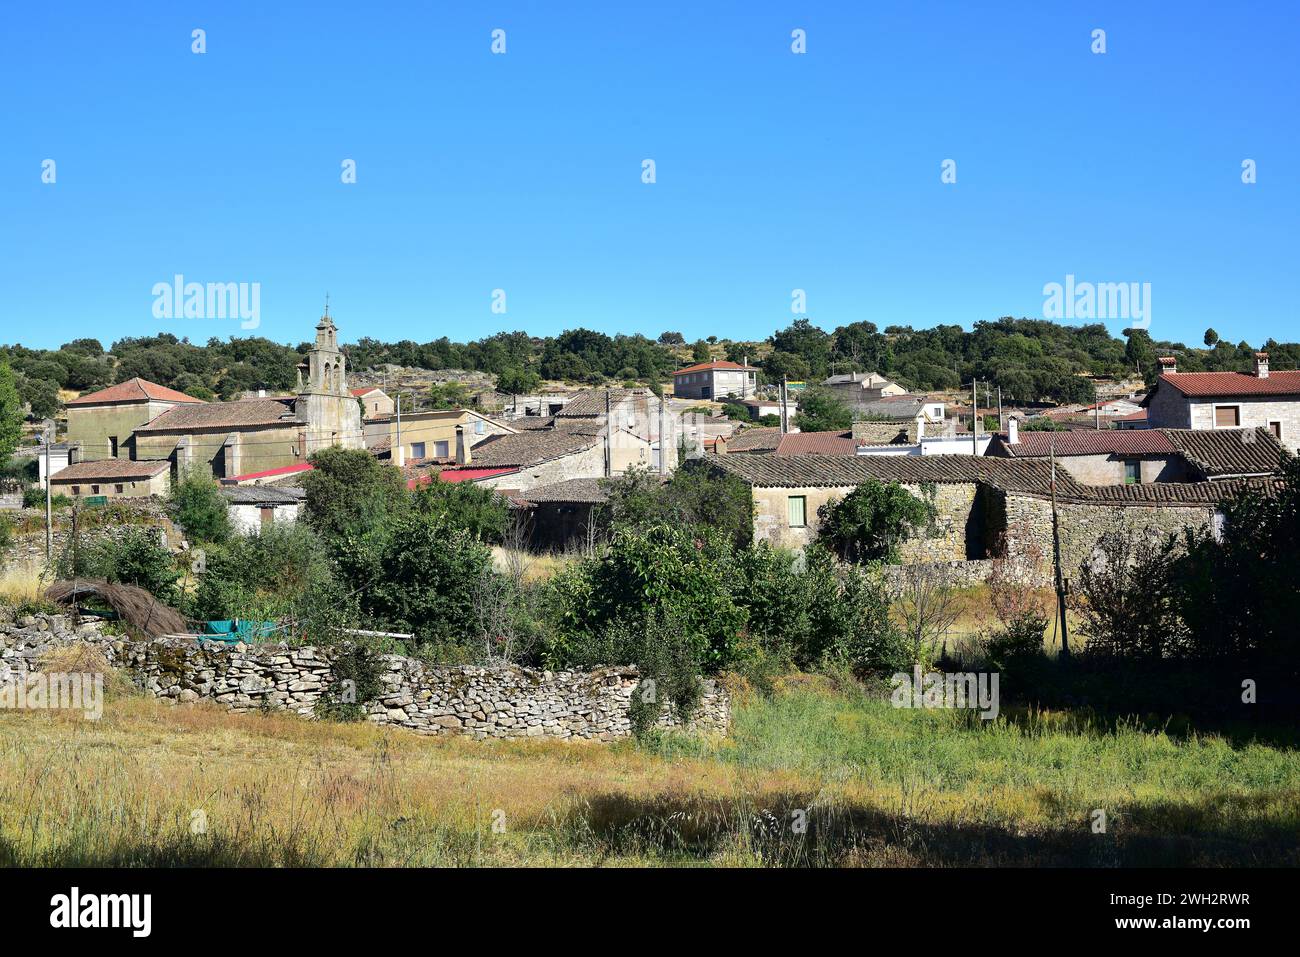 Fornillos de Fermoselle, Villar del Buey municipality. Zamora province, Castilla y Leon, Spain. Stock Photo